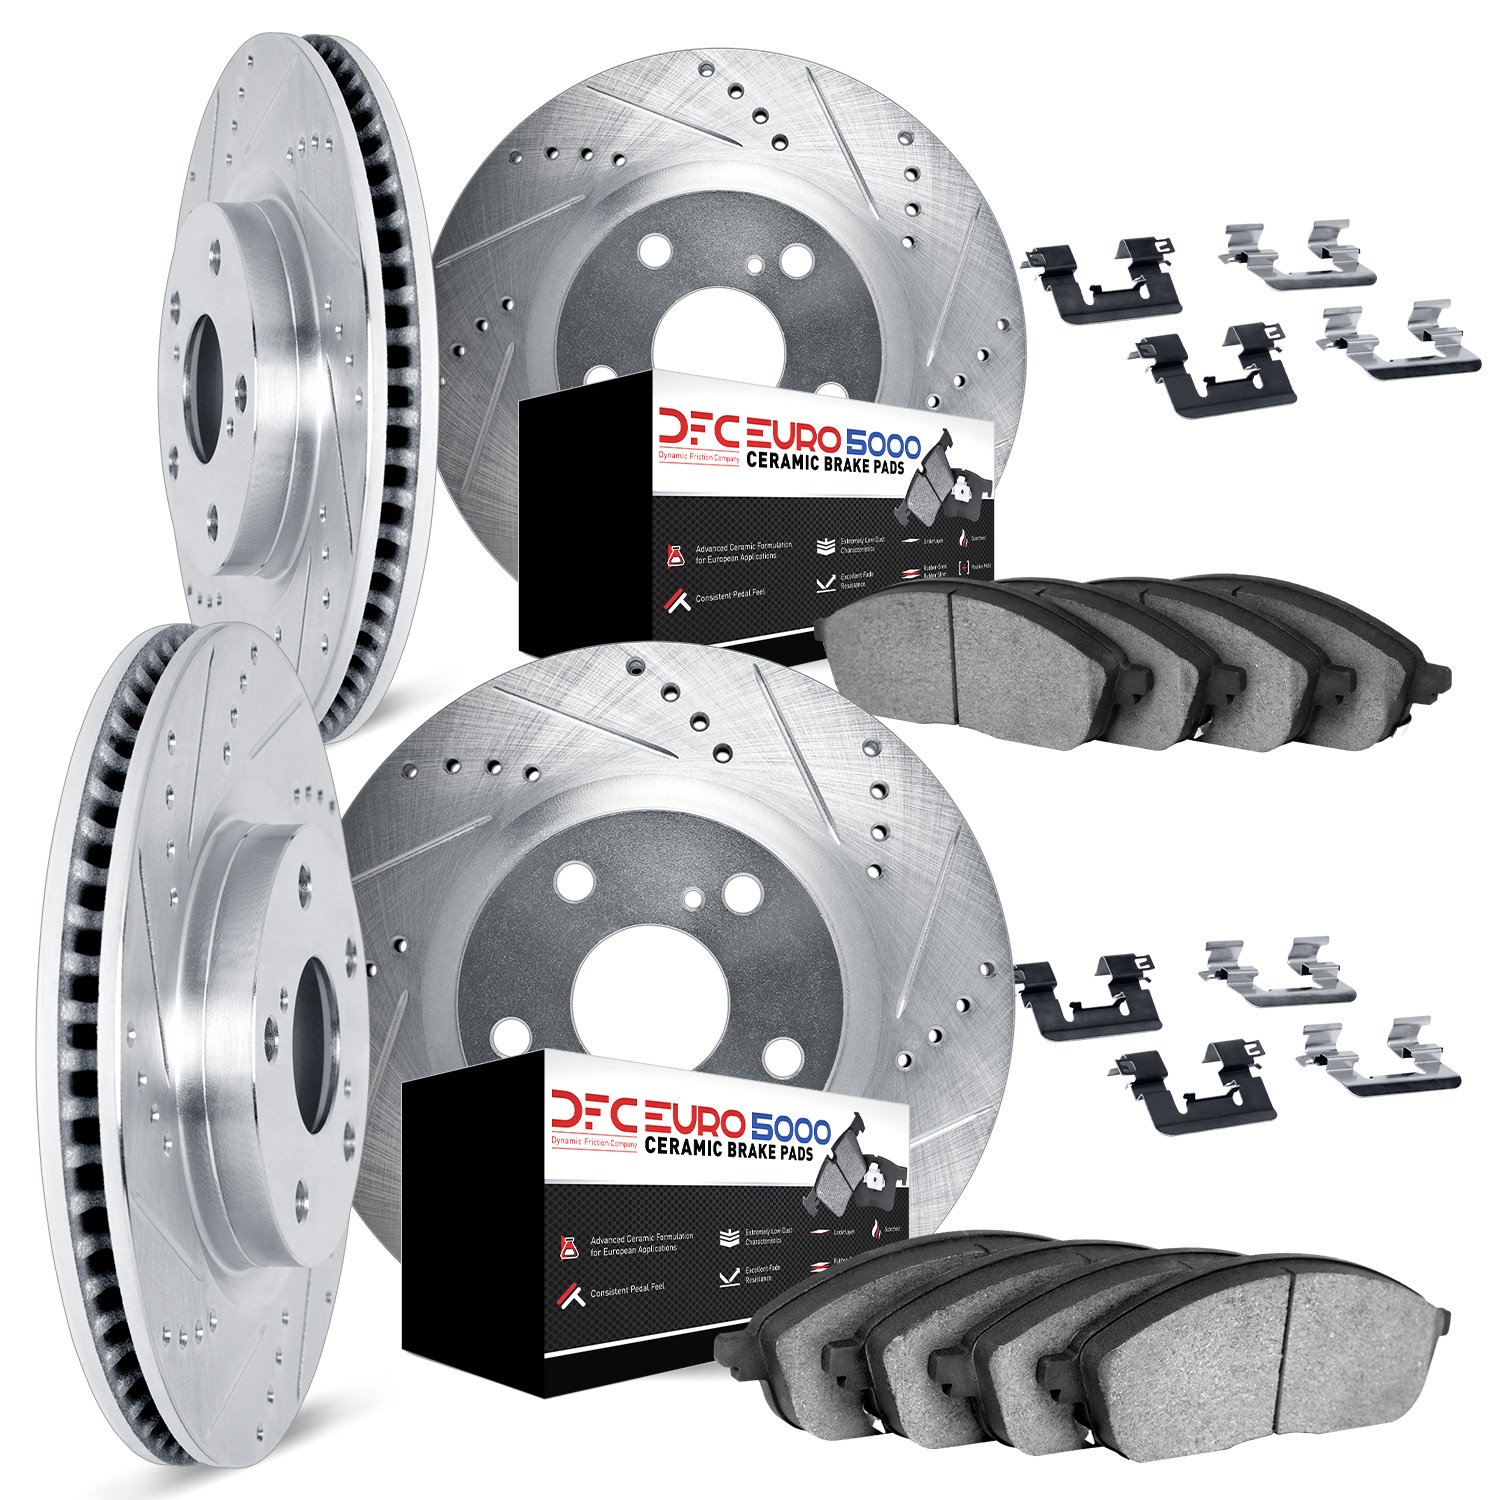 7614-67002 Drilled/Slotted Brake Rotors w/5000 Euro Ceramic Brake Pads Kit & Hardware [Silver], 2011-2019 Infiniti/Nissan, Posit